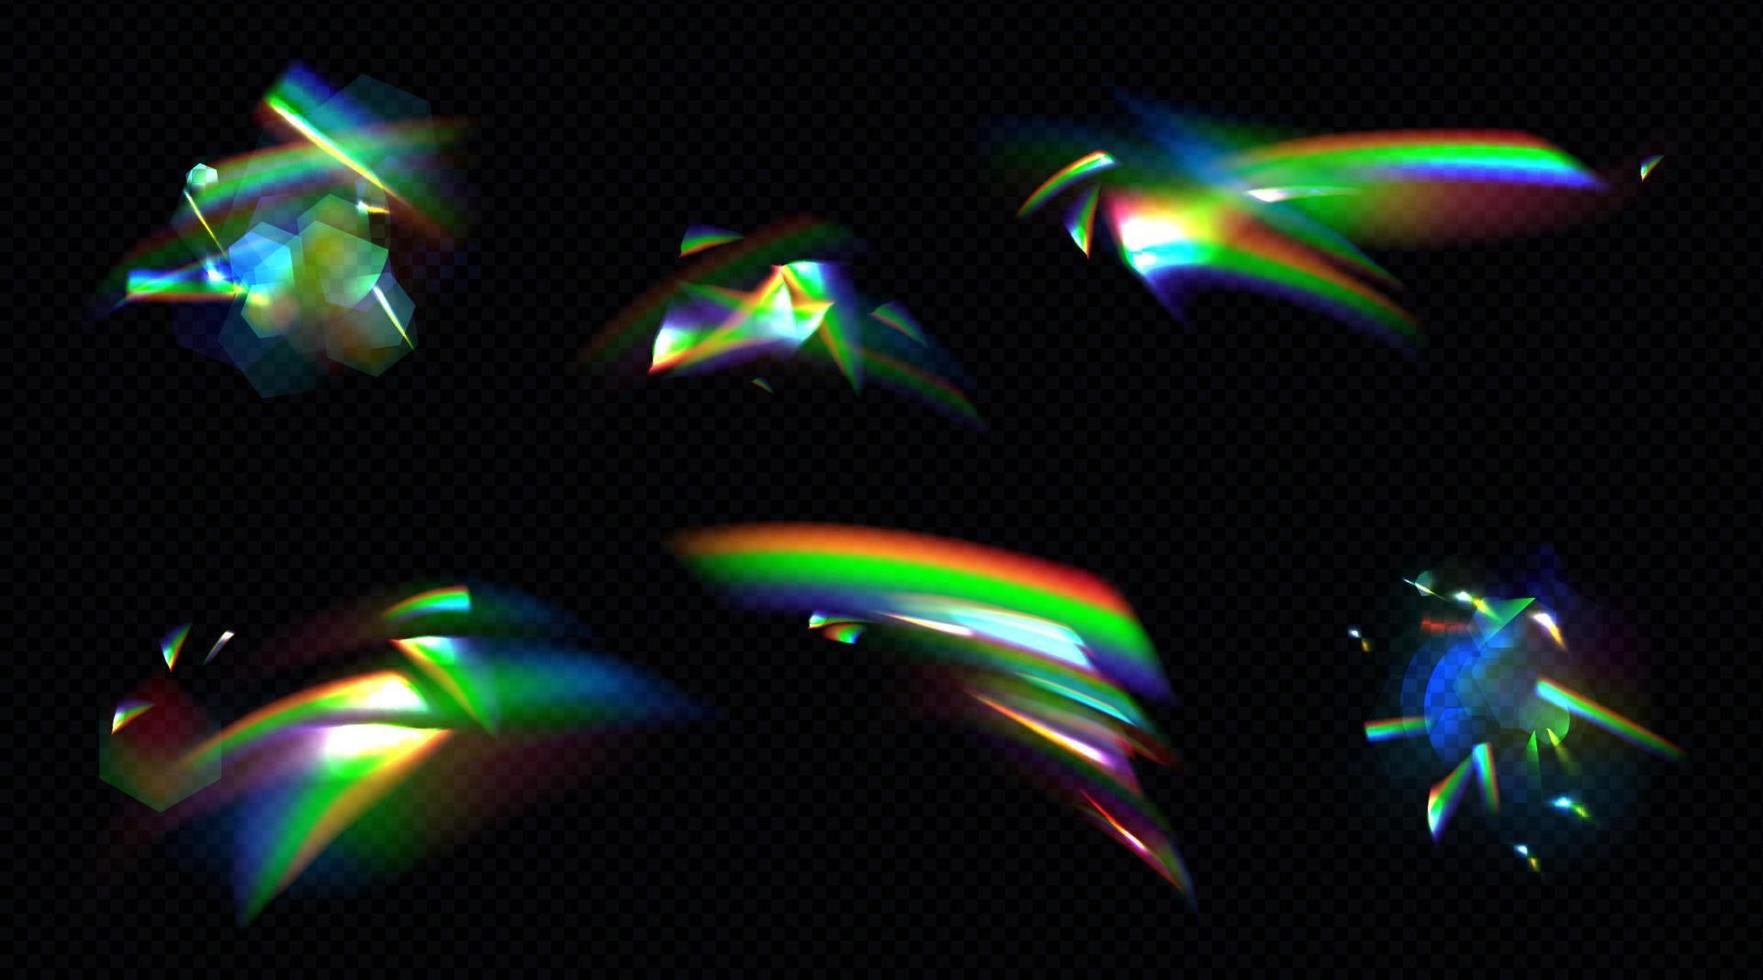 luz de cristal do arco-íris, lente de reflexão de reflexo de prisma vetor